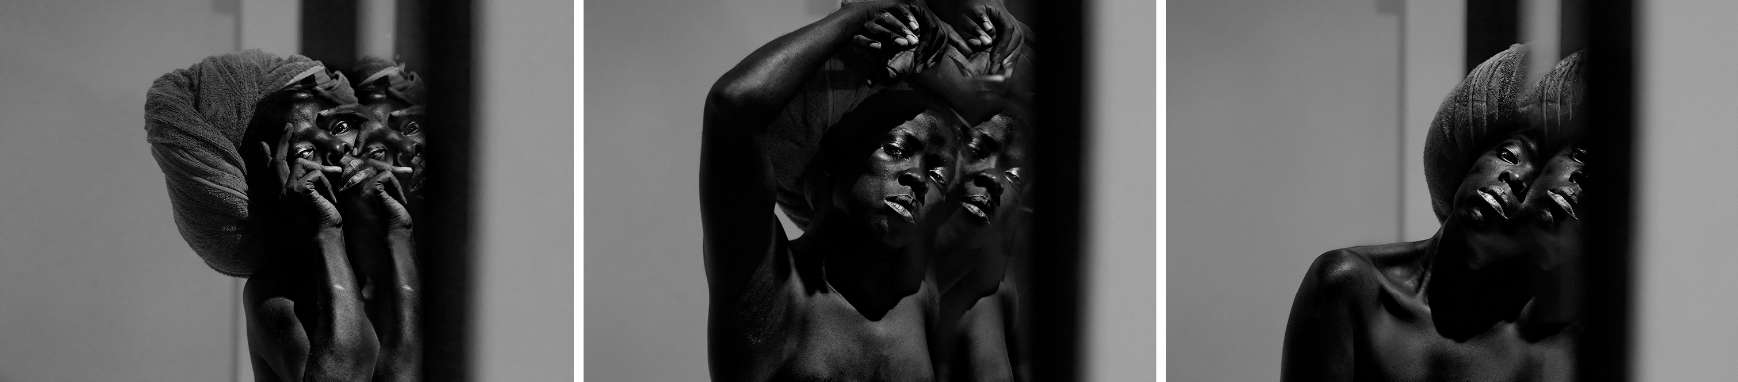 Three portraits of black figure